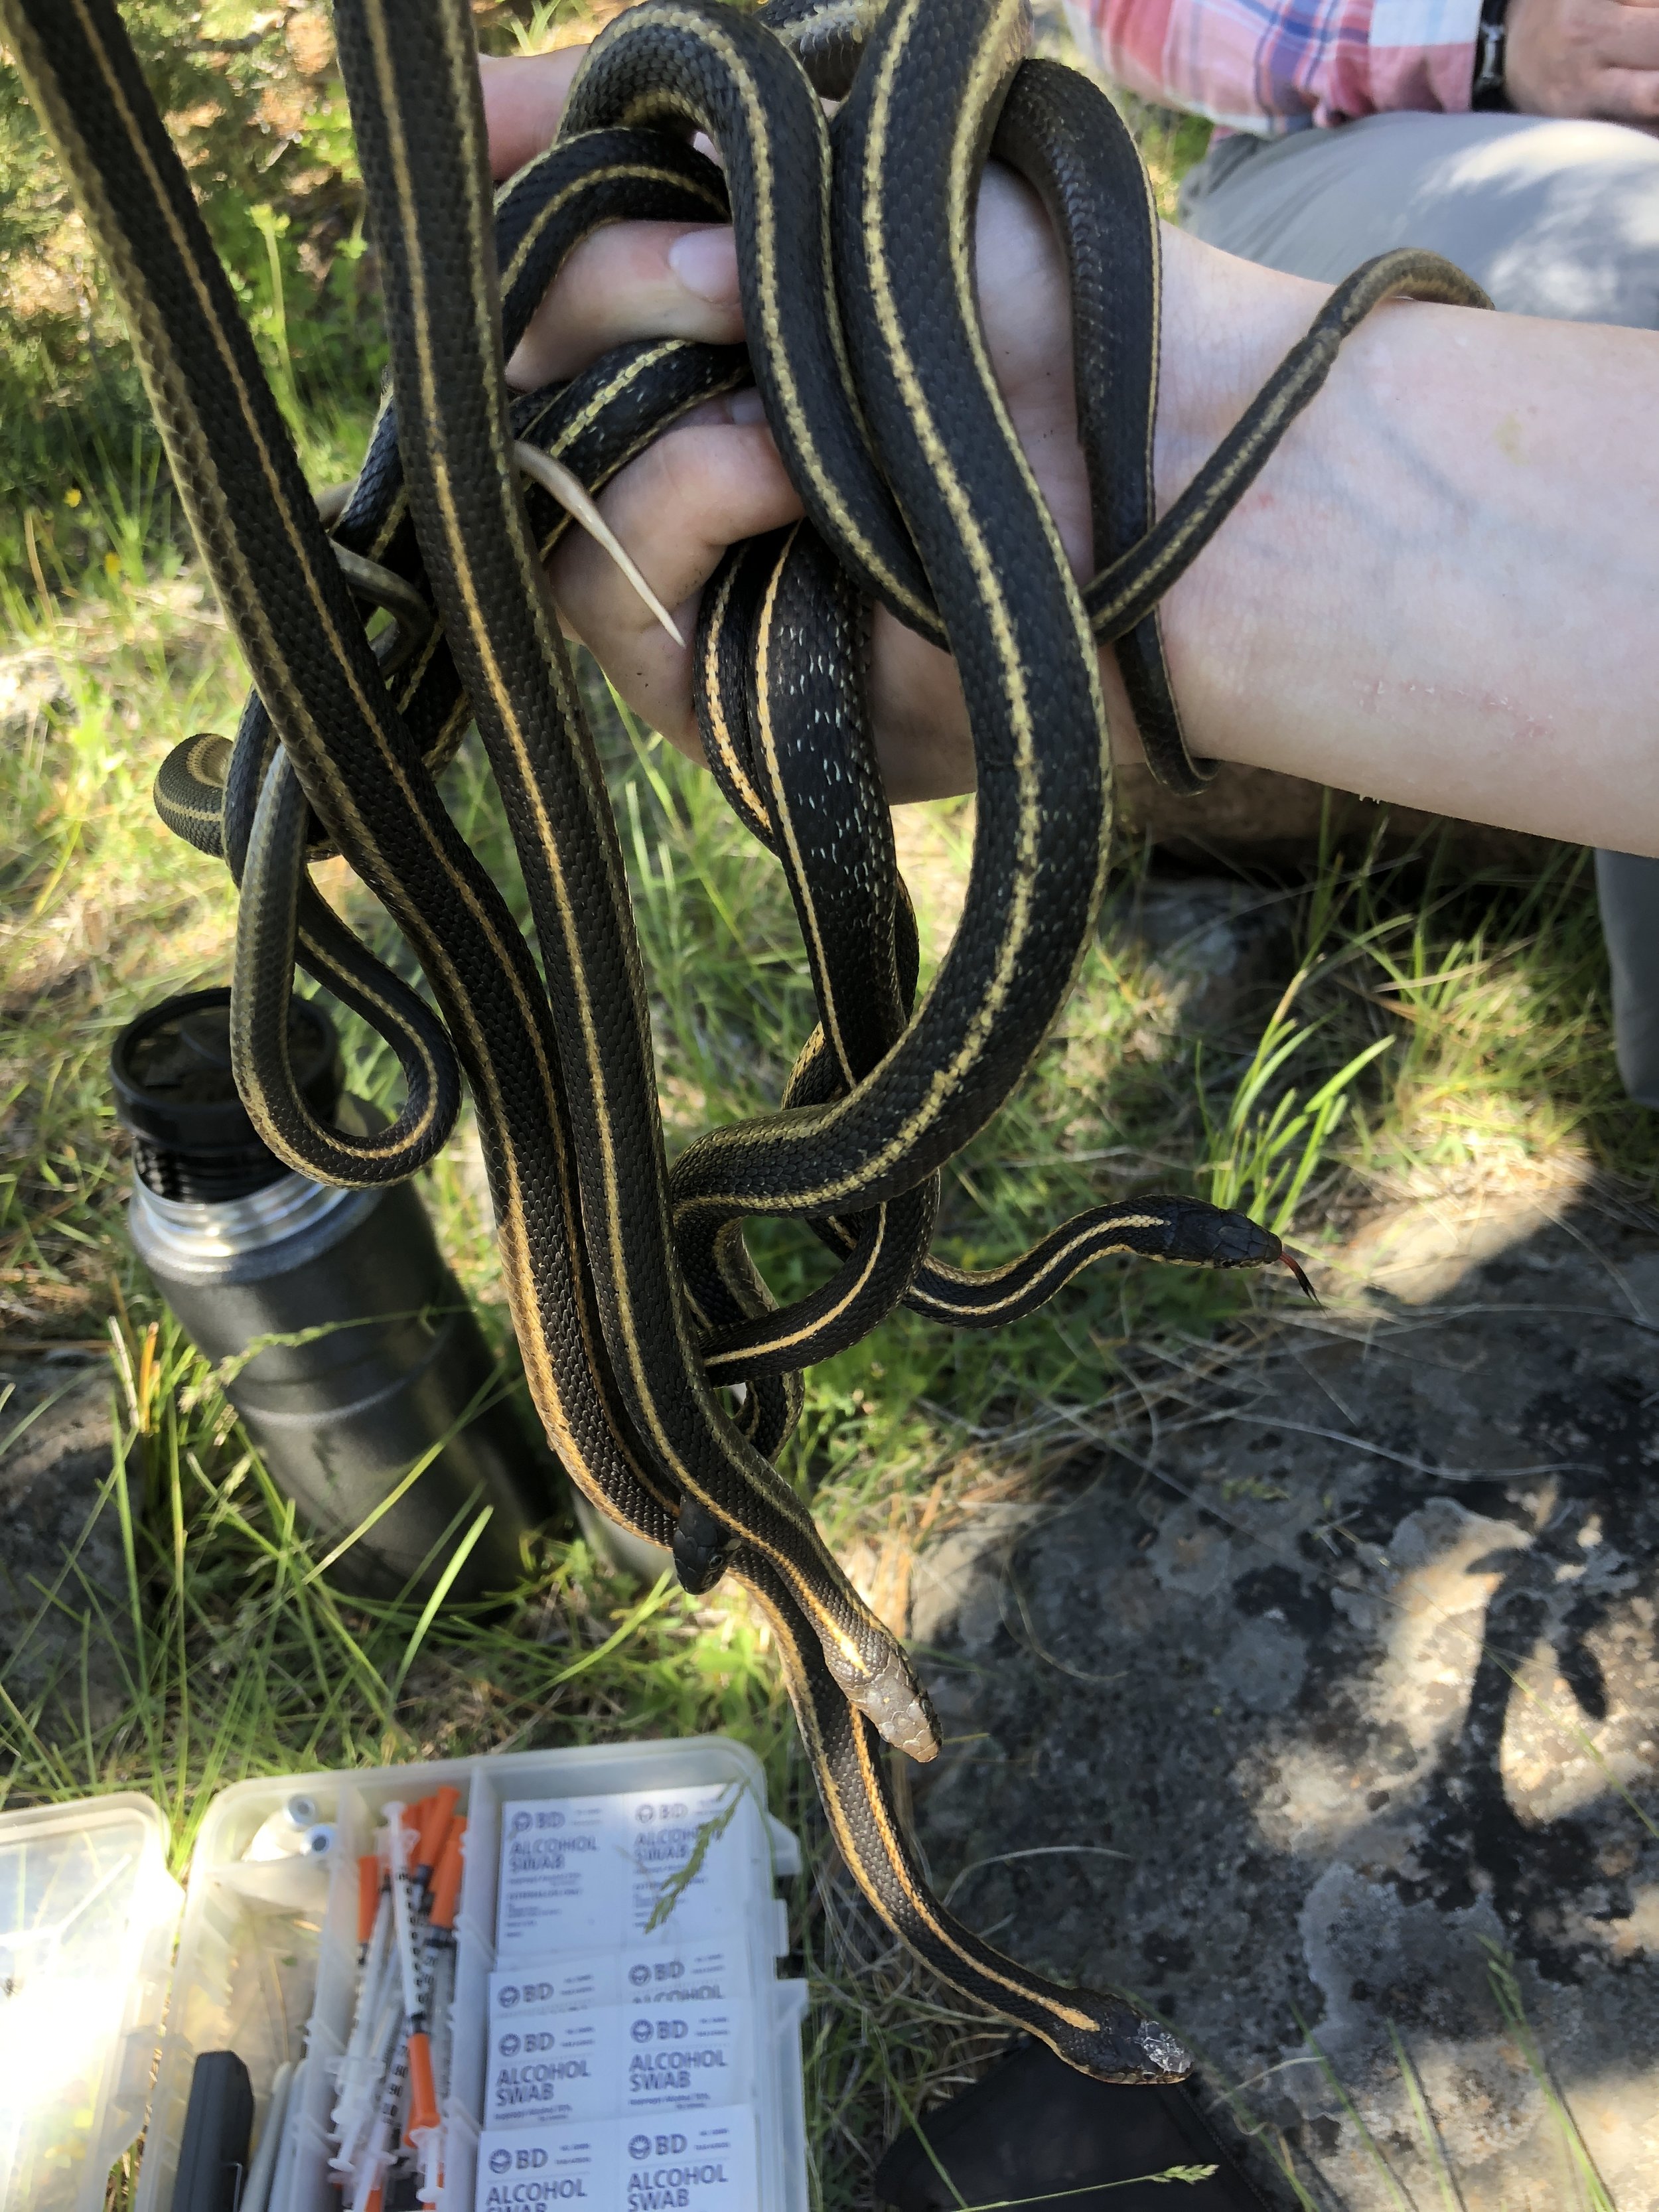 A handful of garter snakes